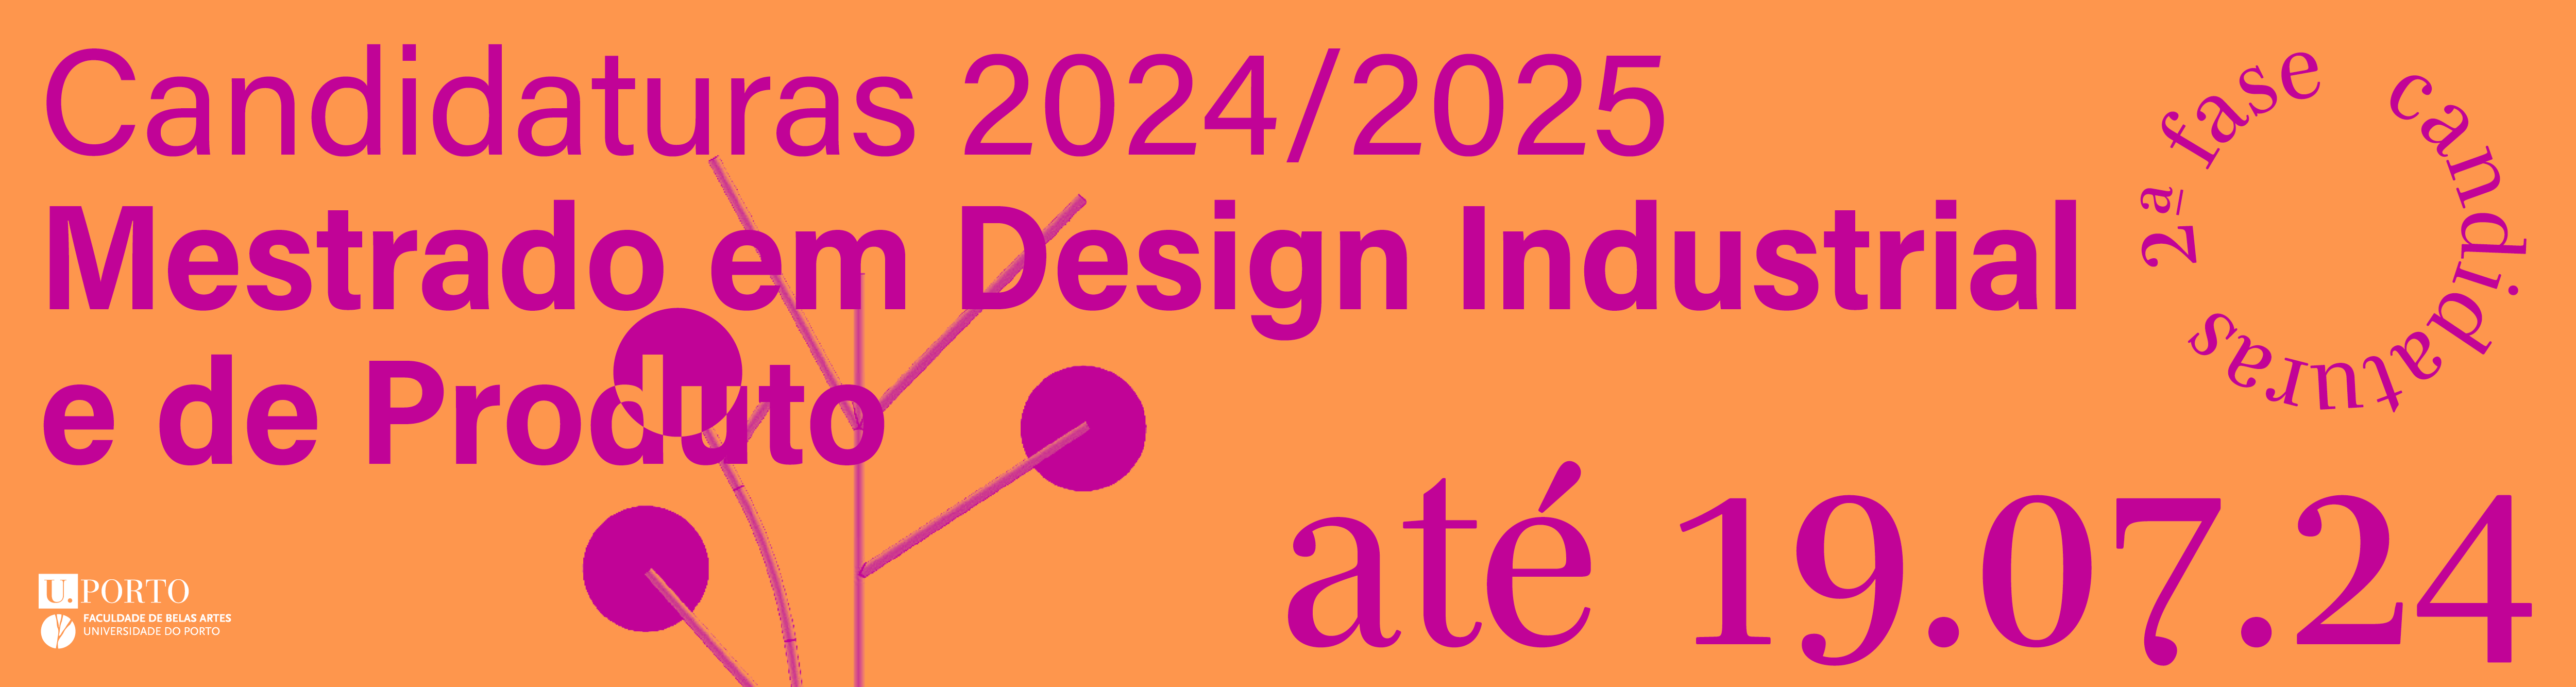 2 Fase de Candidaturas - Mestrado em Design Industrial e de Produto